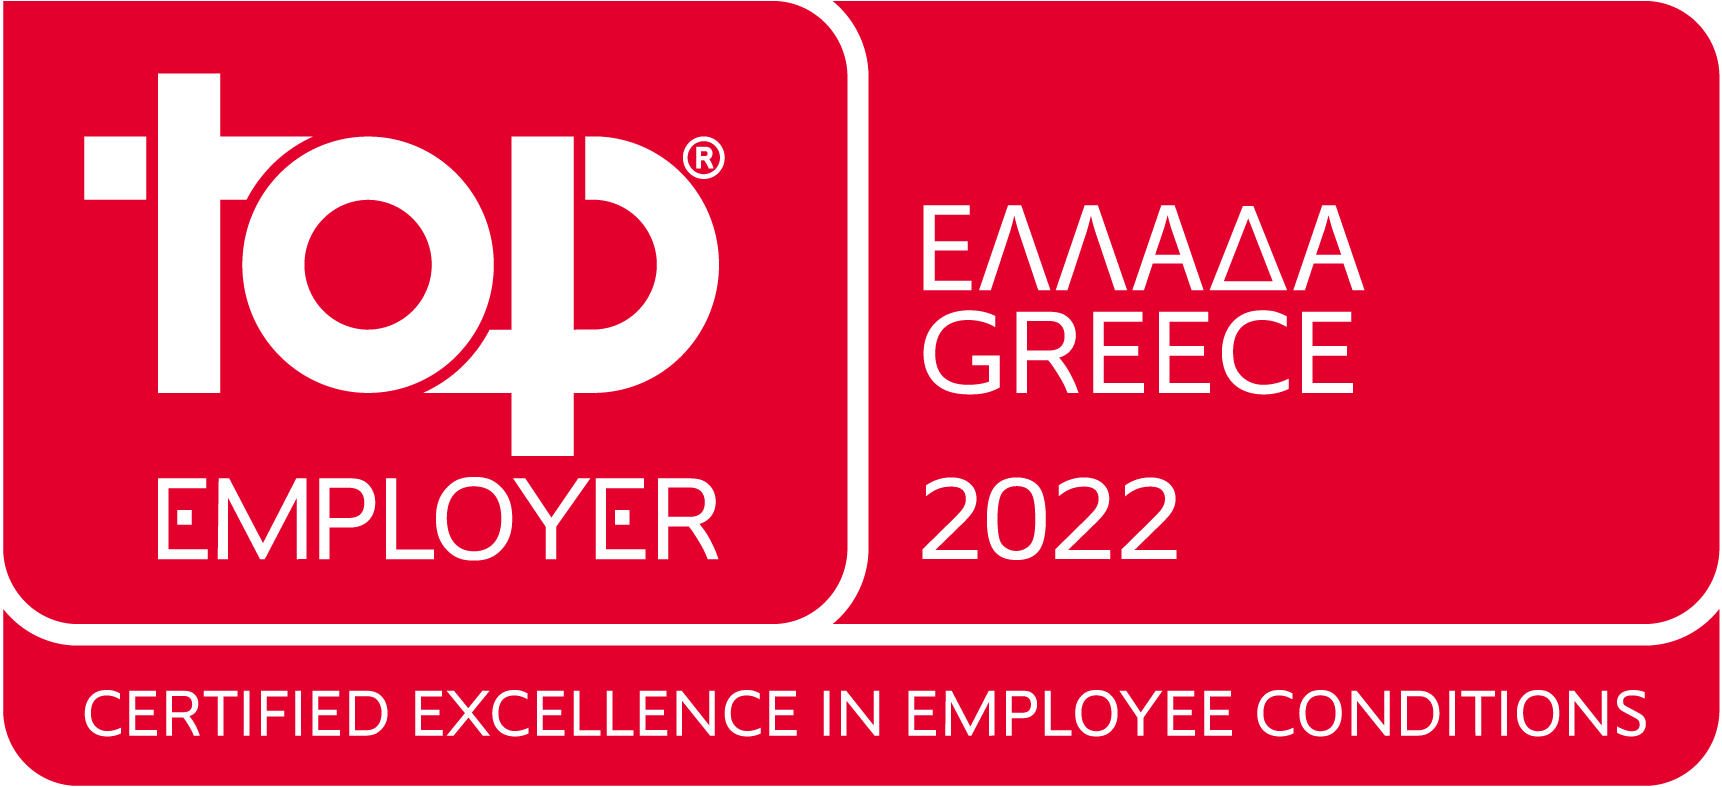 Η L’Oréal Hellas αναγνωρίζεται ως Top Employer για το 2022